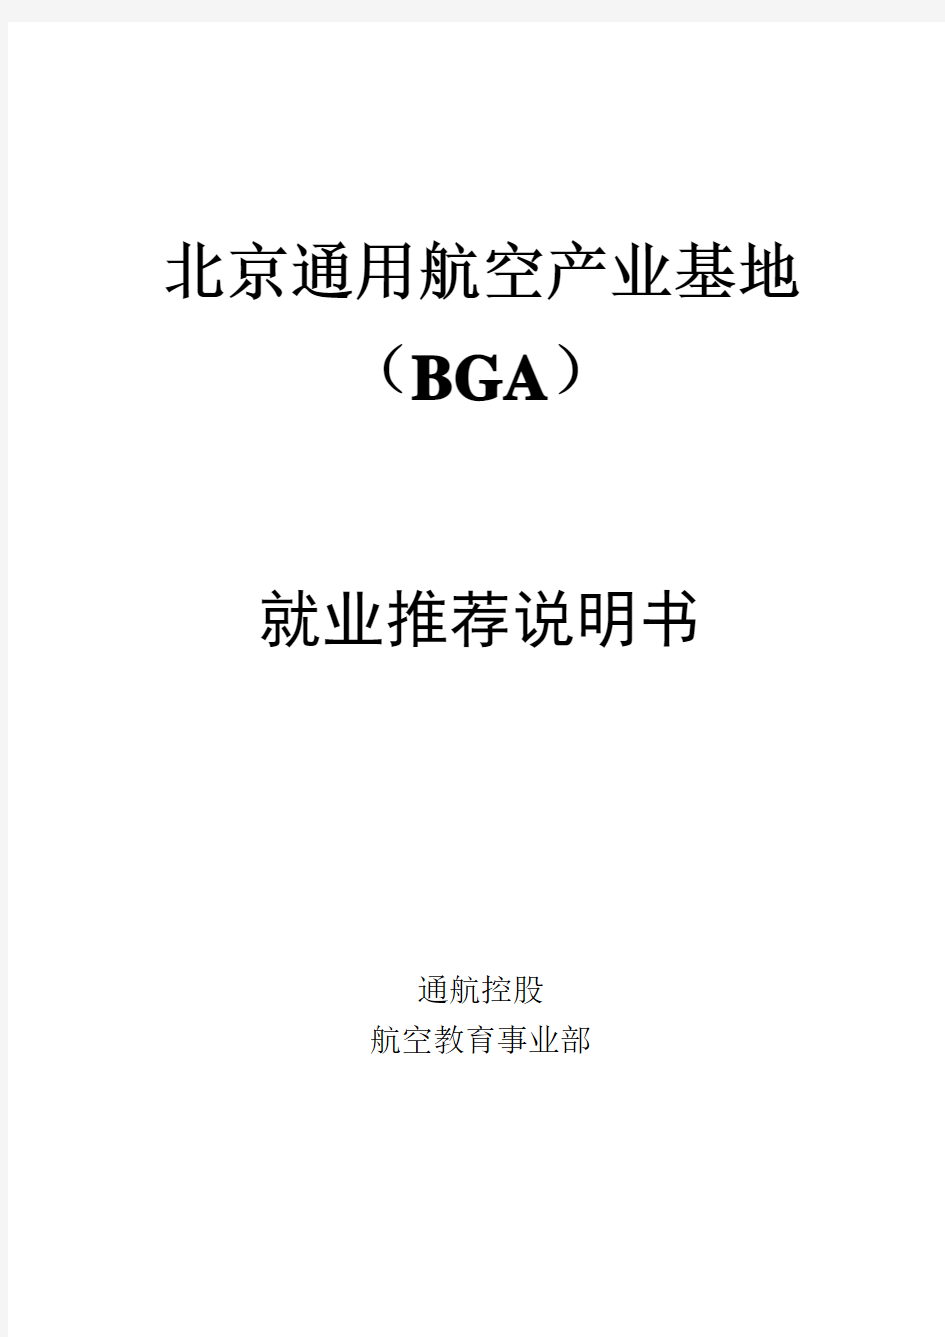 北京通用航空产业基地BGA